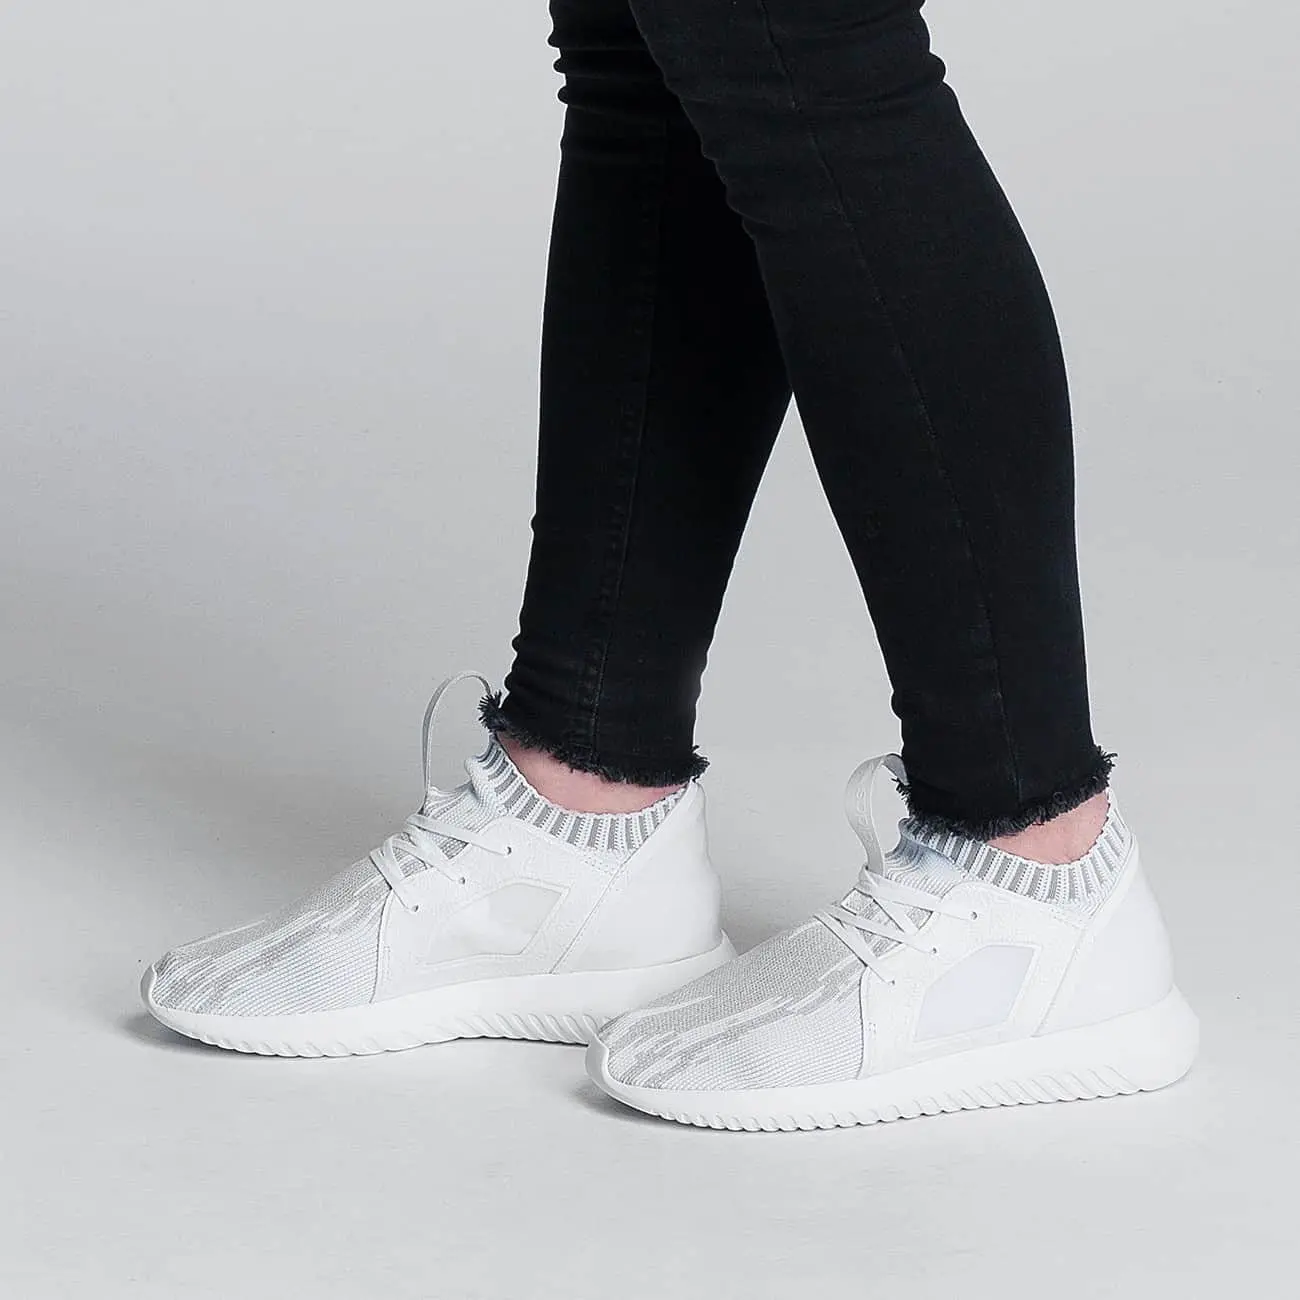 Tips membersihkan sneakers putih supaya tetap kinclong. (Sumber foto: bubblefootballverona.com)